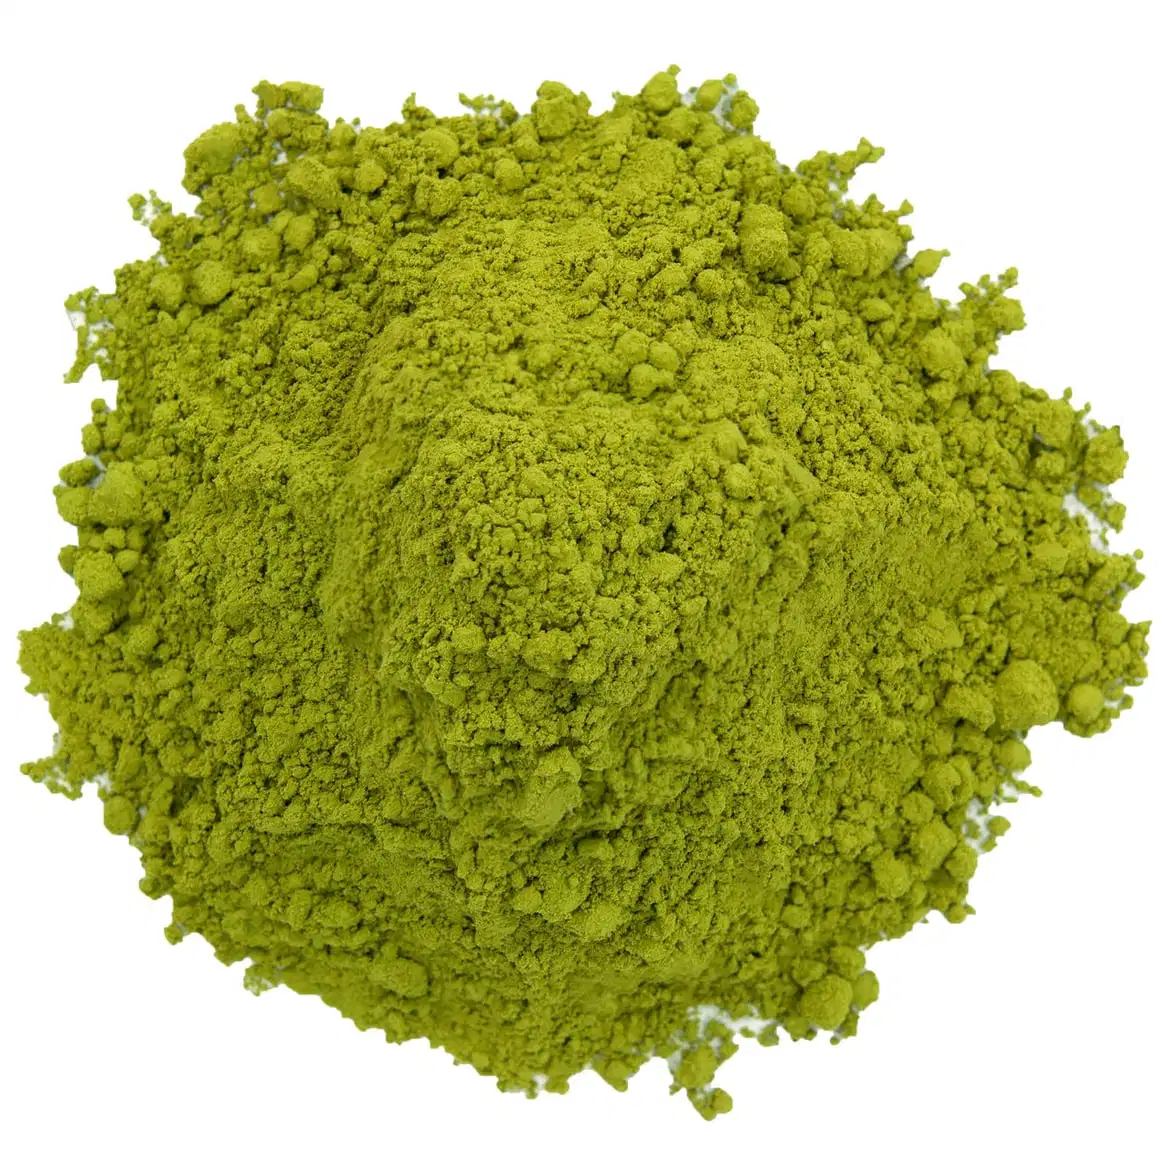 Церемониальный класса органических Matcha зеленый чай порошок аутентичные Matcha оптовая торговля